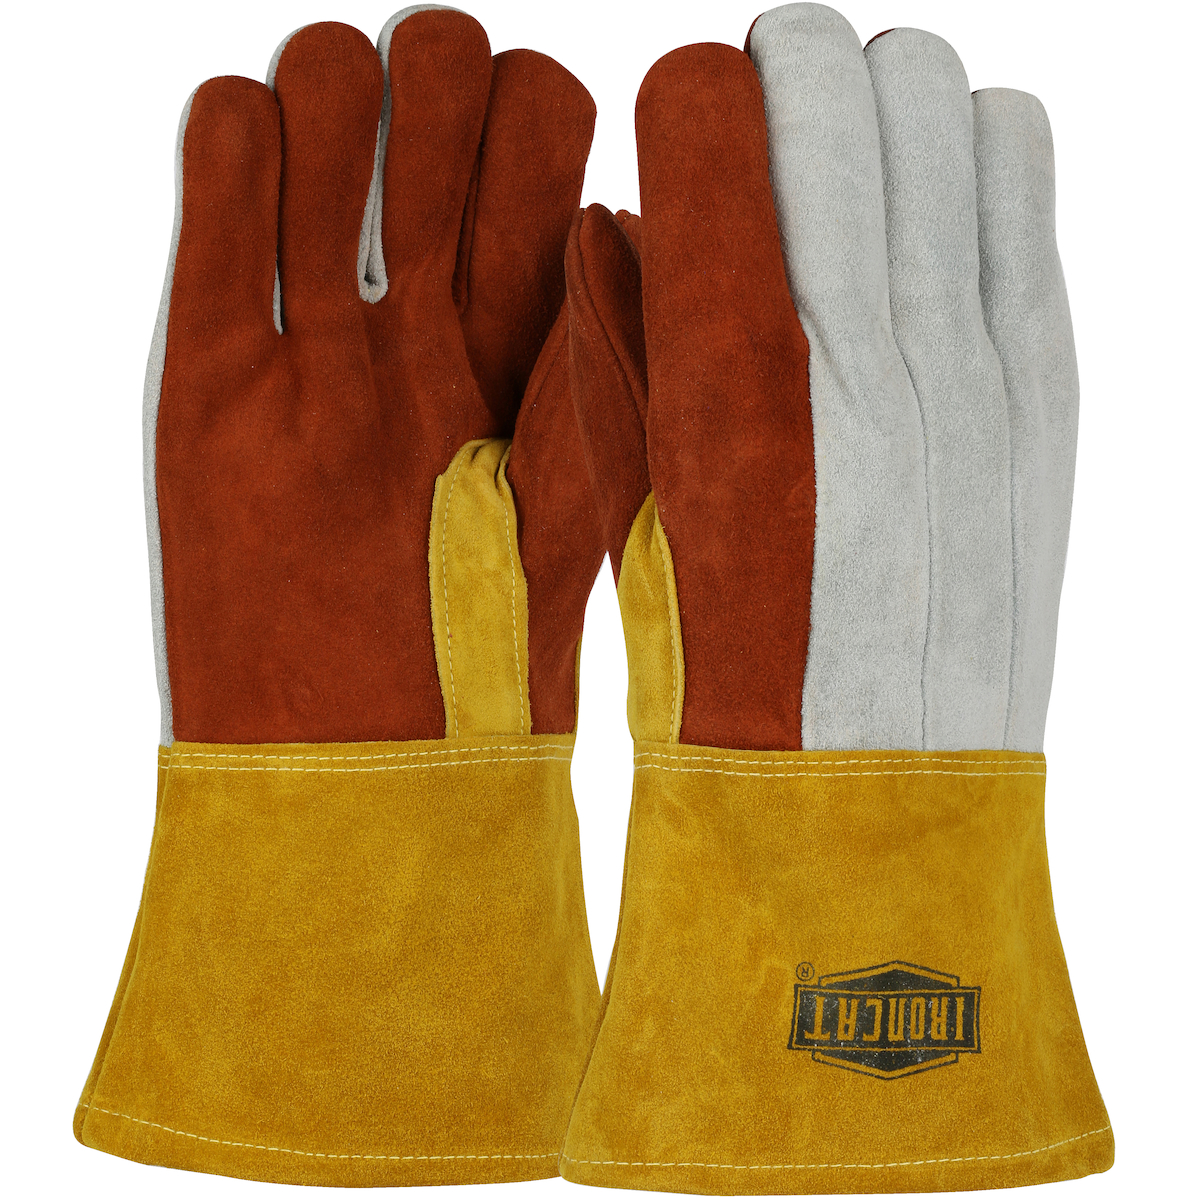 2086GLF PIP®铁猫优质重分裂牛皮14英寸铸造手套与棉衬里和凯夫拉尔®缝合-皮革手套袖口gydF4y2Ba